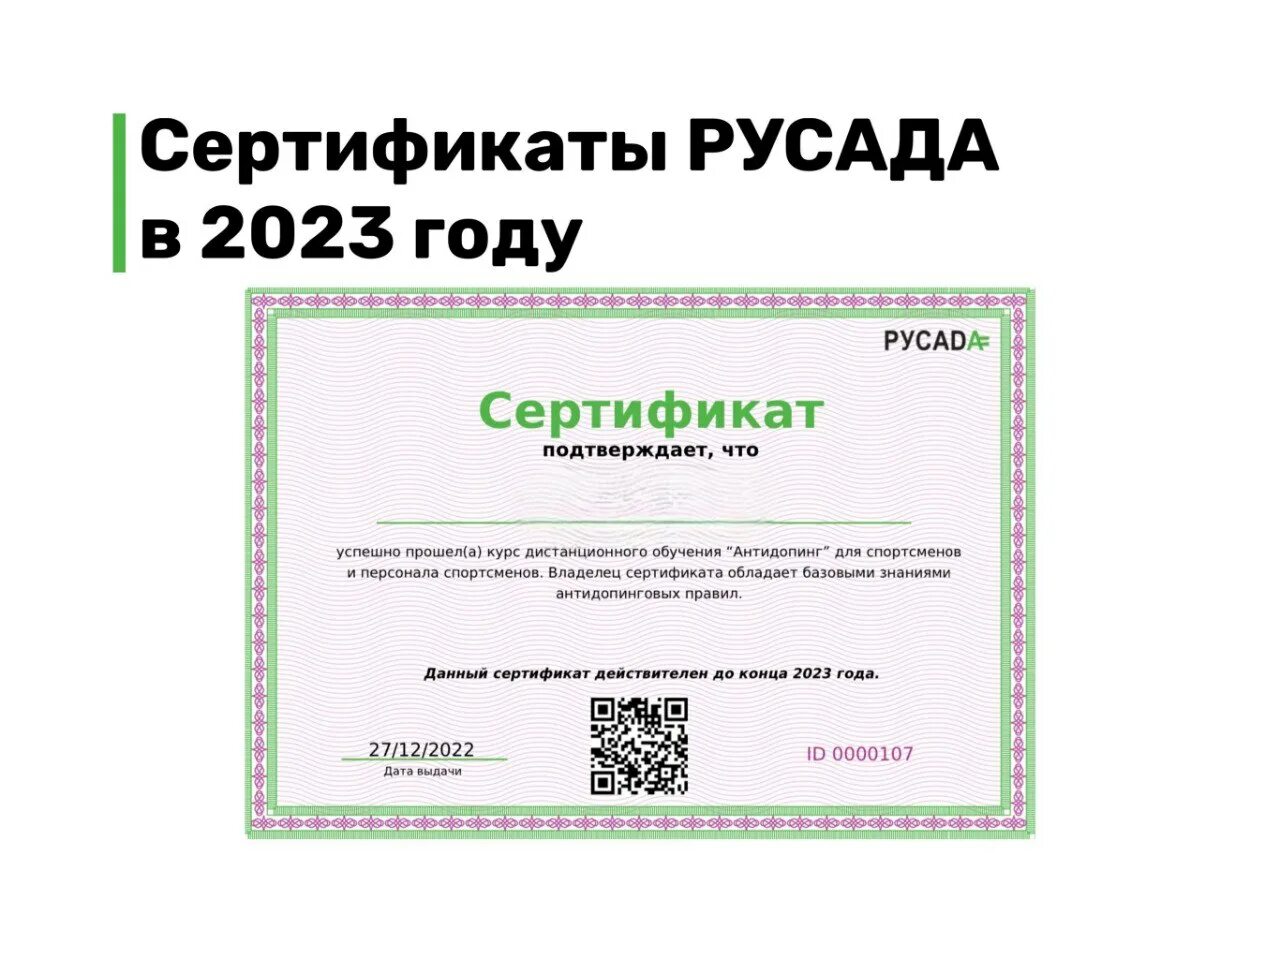 Русада пройти тест спортсменам. Сертификат РУСАДА 2023. Сертификат РУСАДА антидопинг 2023. Сертификаты 2023 года. Сертификат РУСАДА антидопинг.